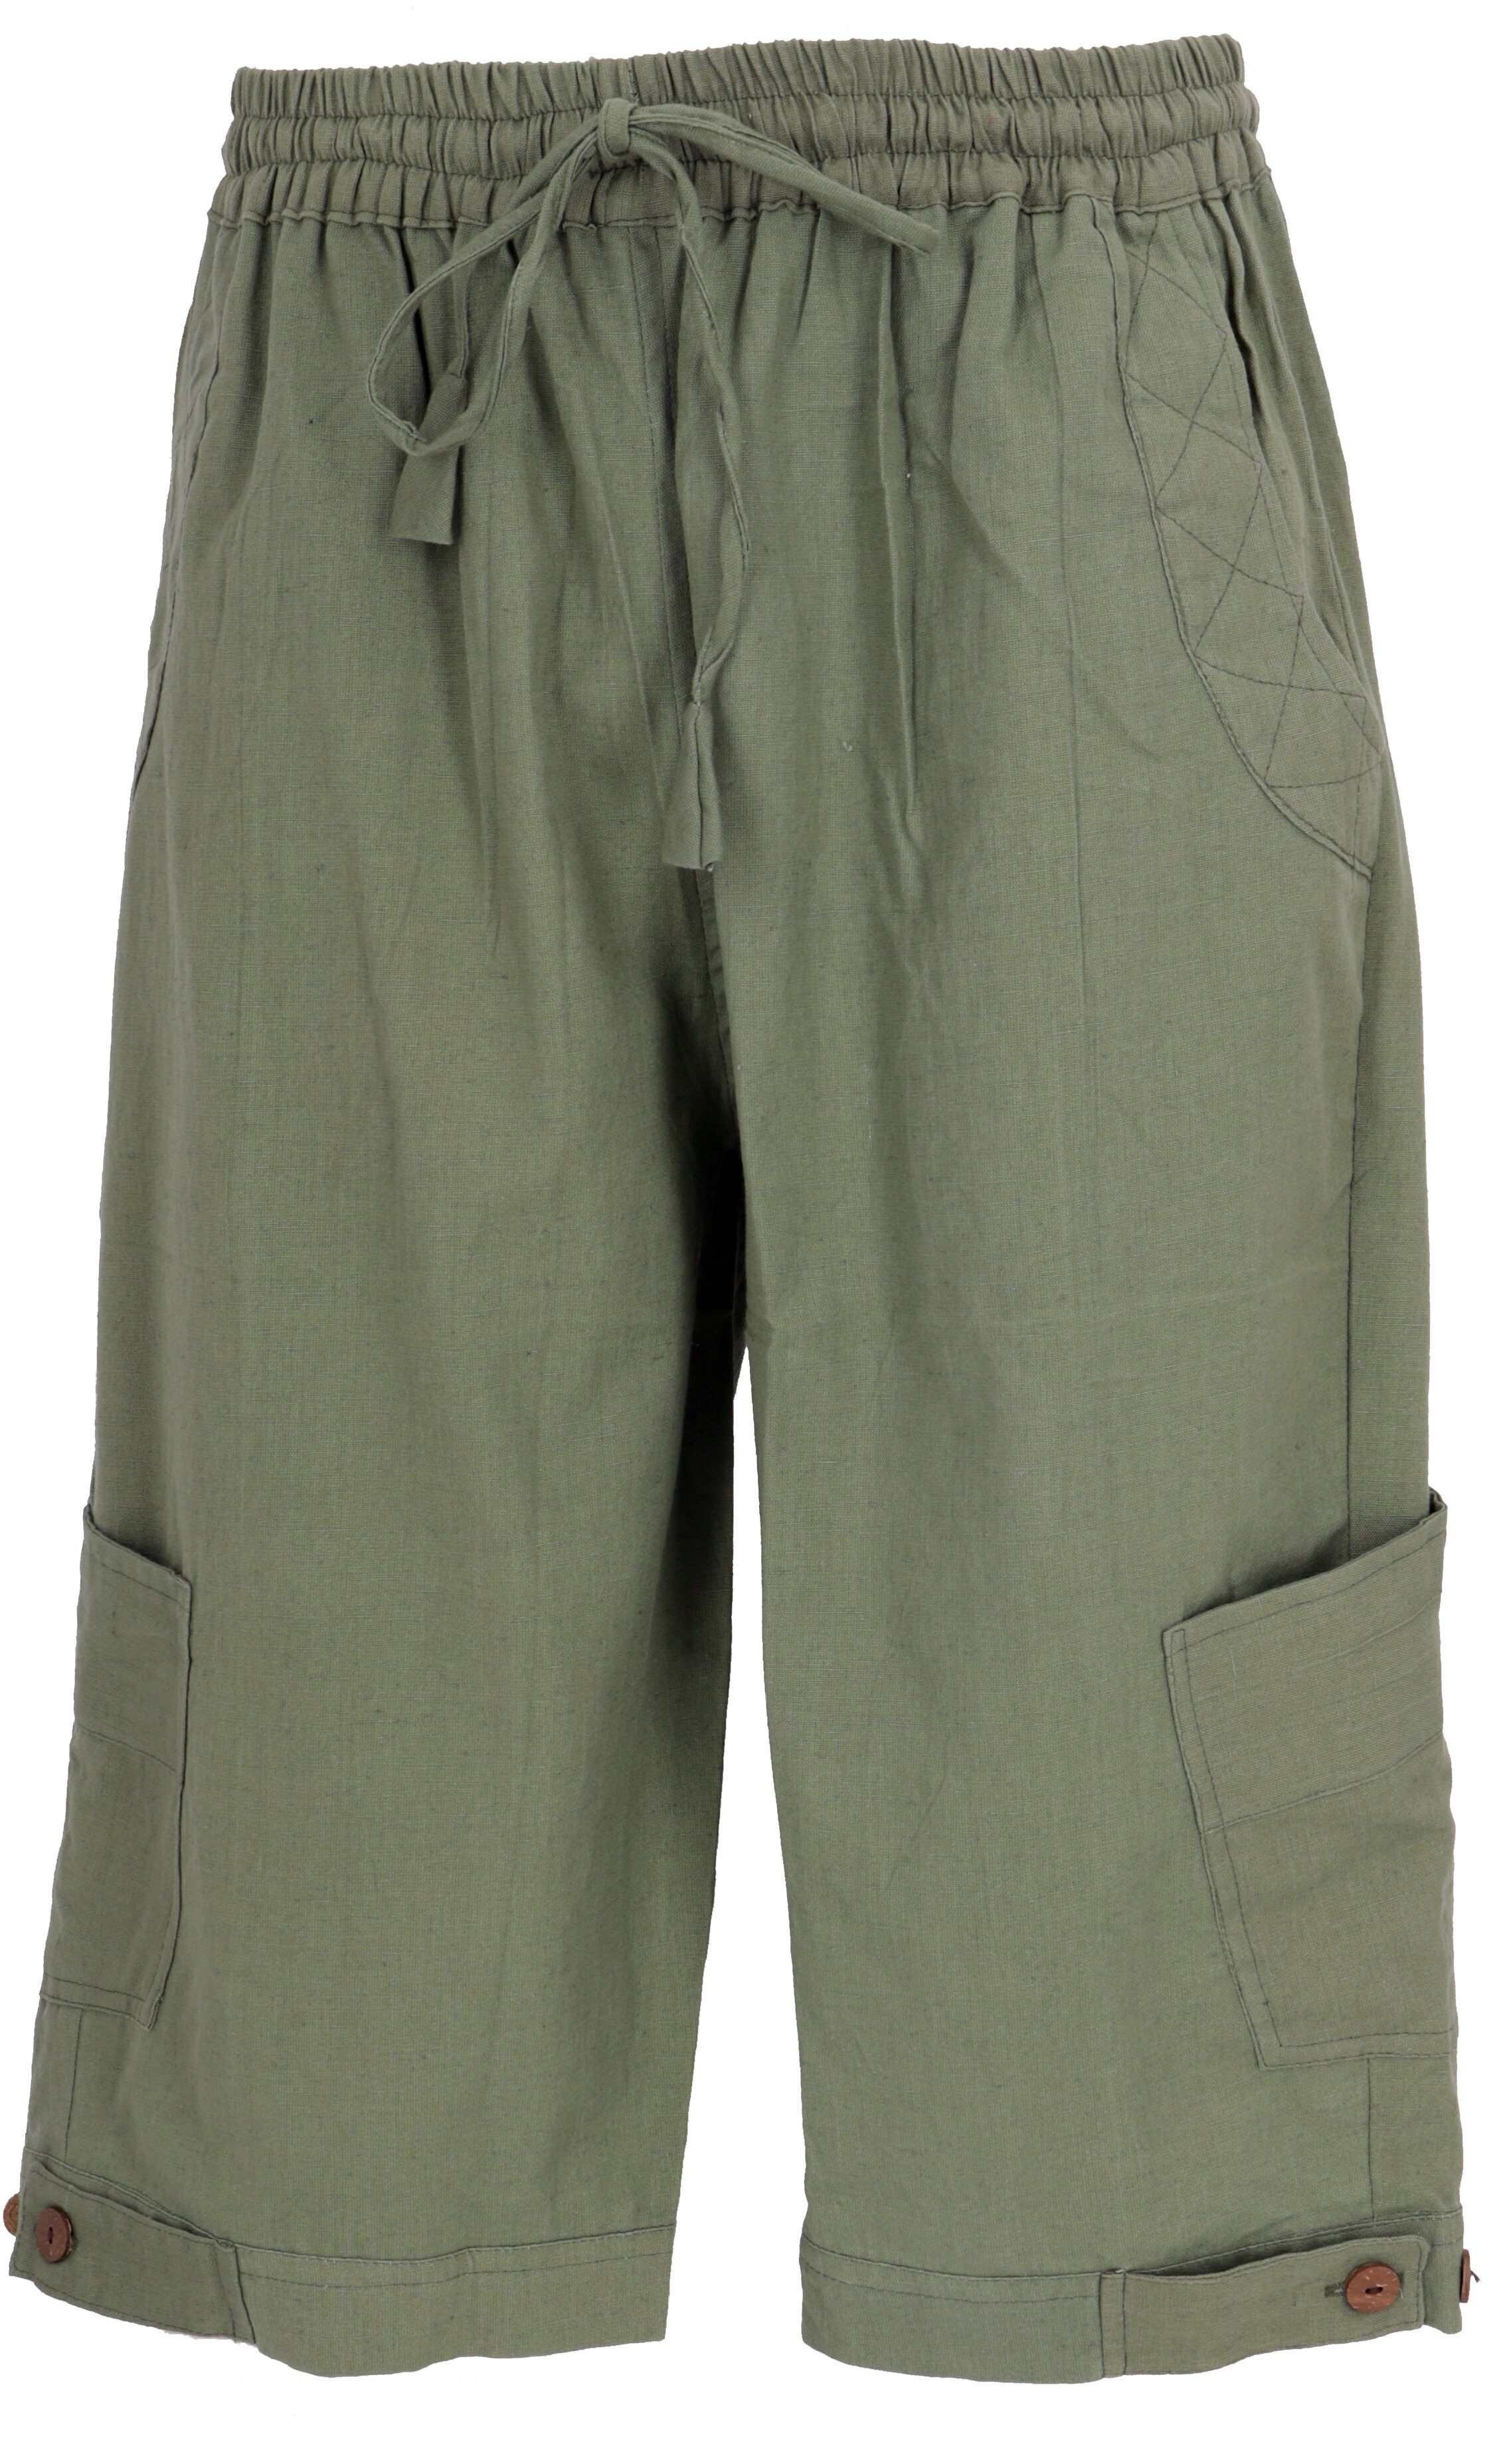 Shorts - Ethno Relaxhose Hose, alternative Style, Goa Guru-Shop olive Goa Bekleidung Yogahose, 3/4